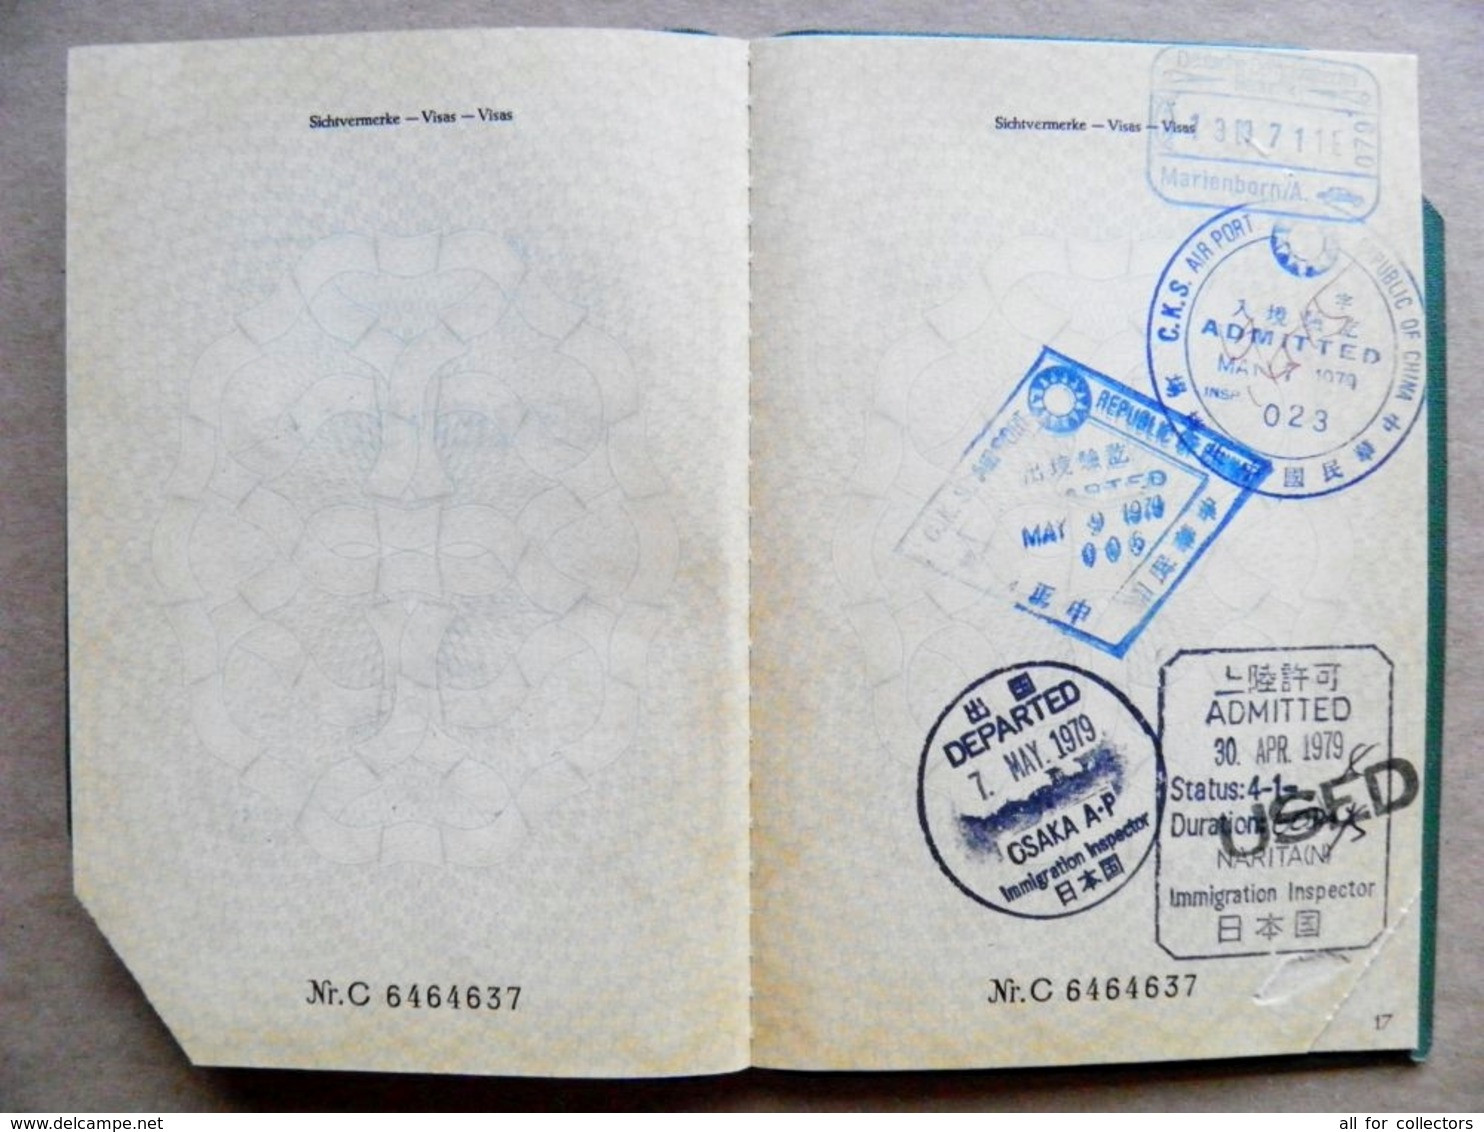 reisepass passport germany deutschland 1971 bremen